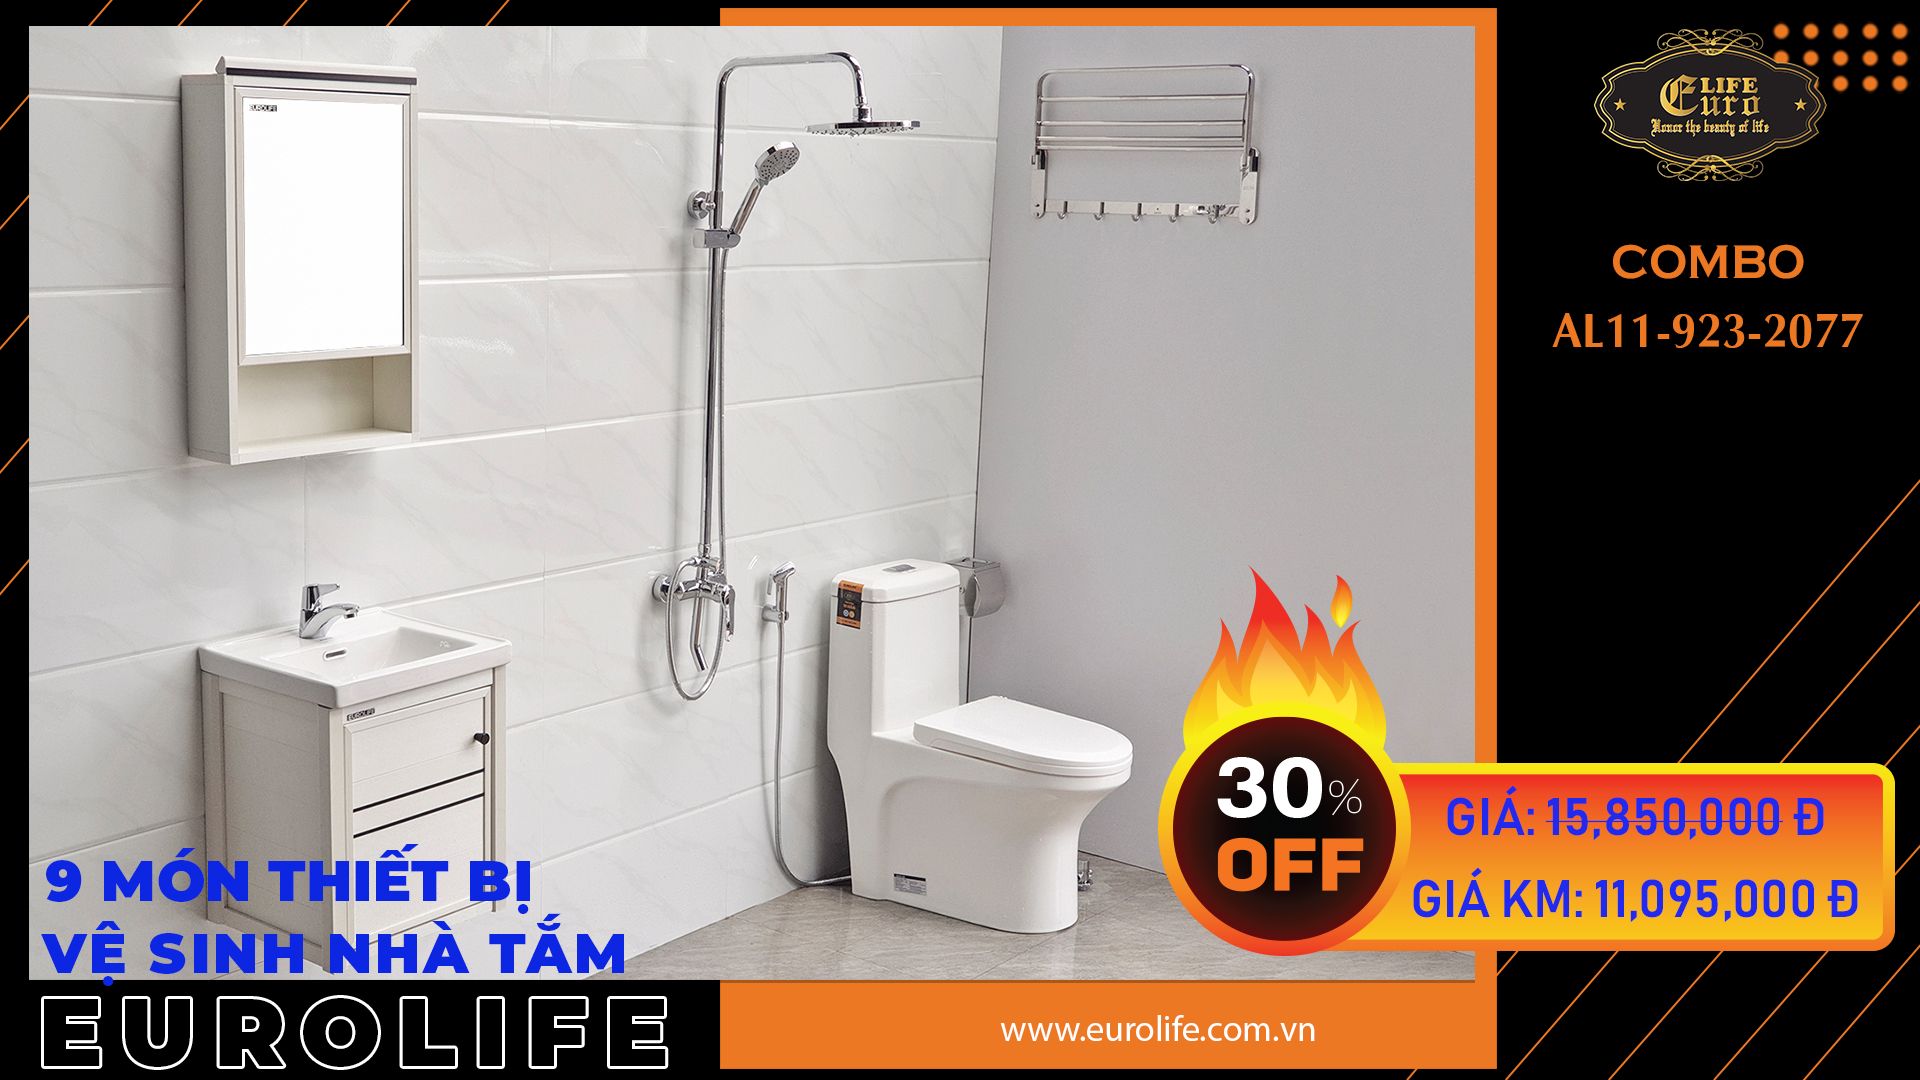  Trọn bộ thiết bị vệ sinh nhà tắm Eurolife CB AL11-S923-BC2077 